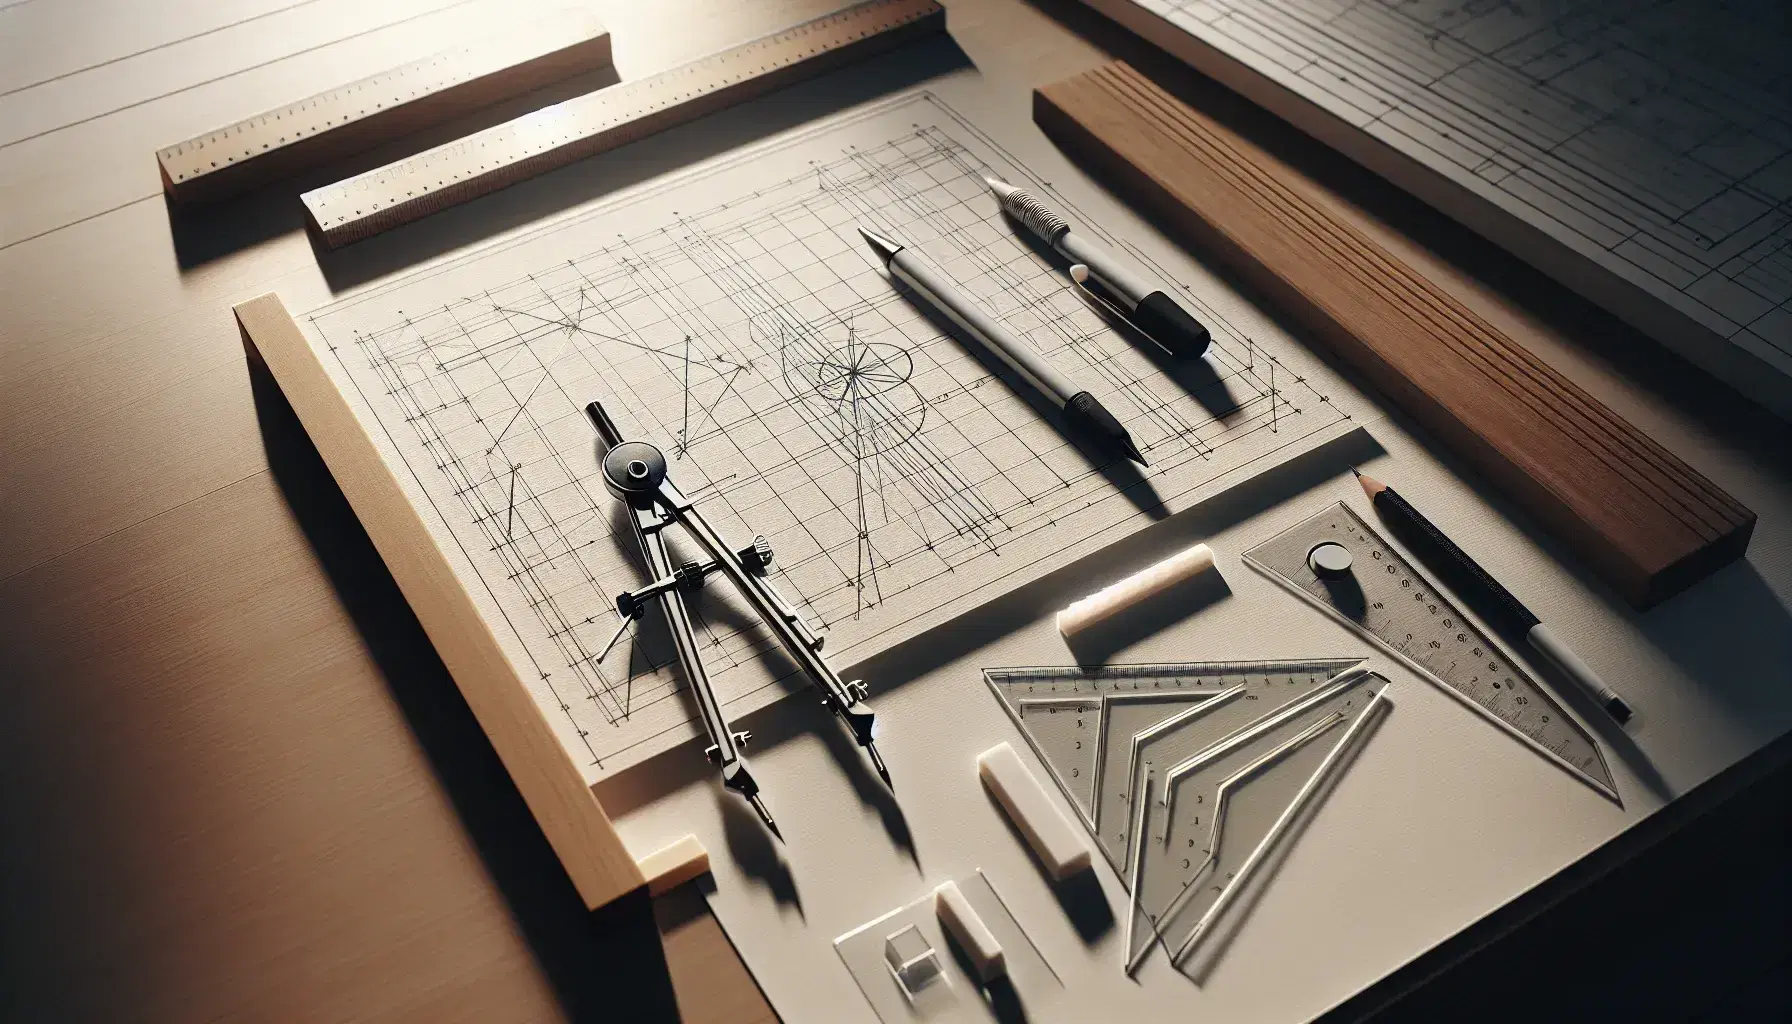 Mesa de trabajo iluminada con instrumentos de dibujo técnico y plano en proceso, incluyendo compás metálico, triángulos, lápiz mecánico y escuadra de madera.